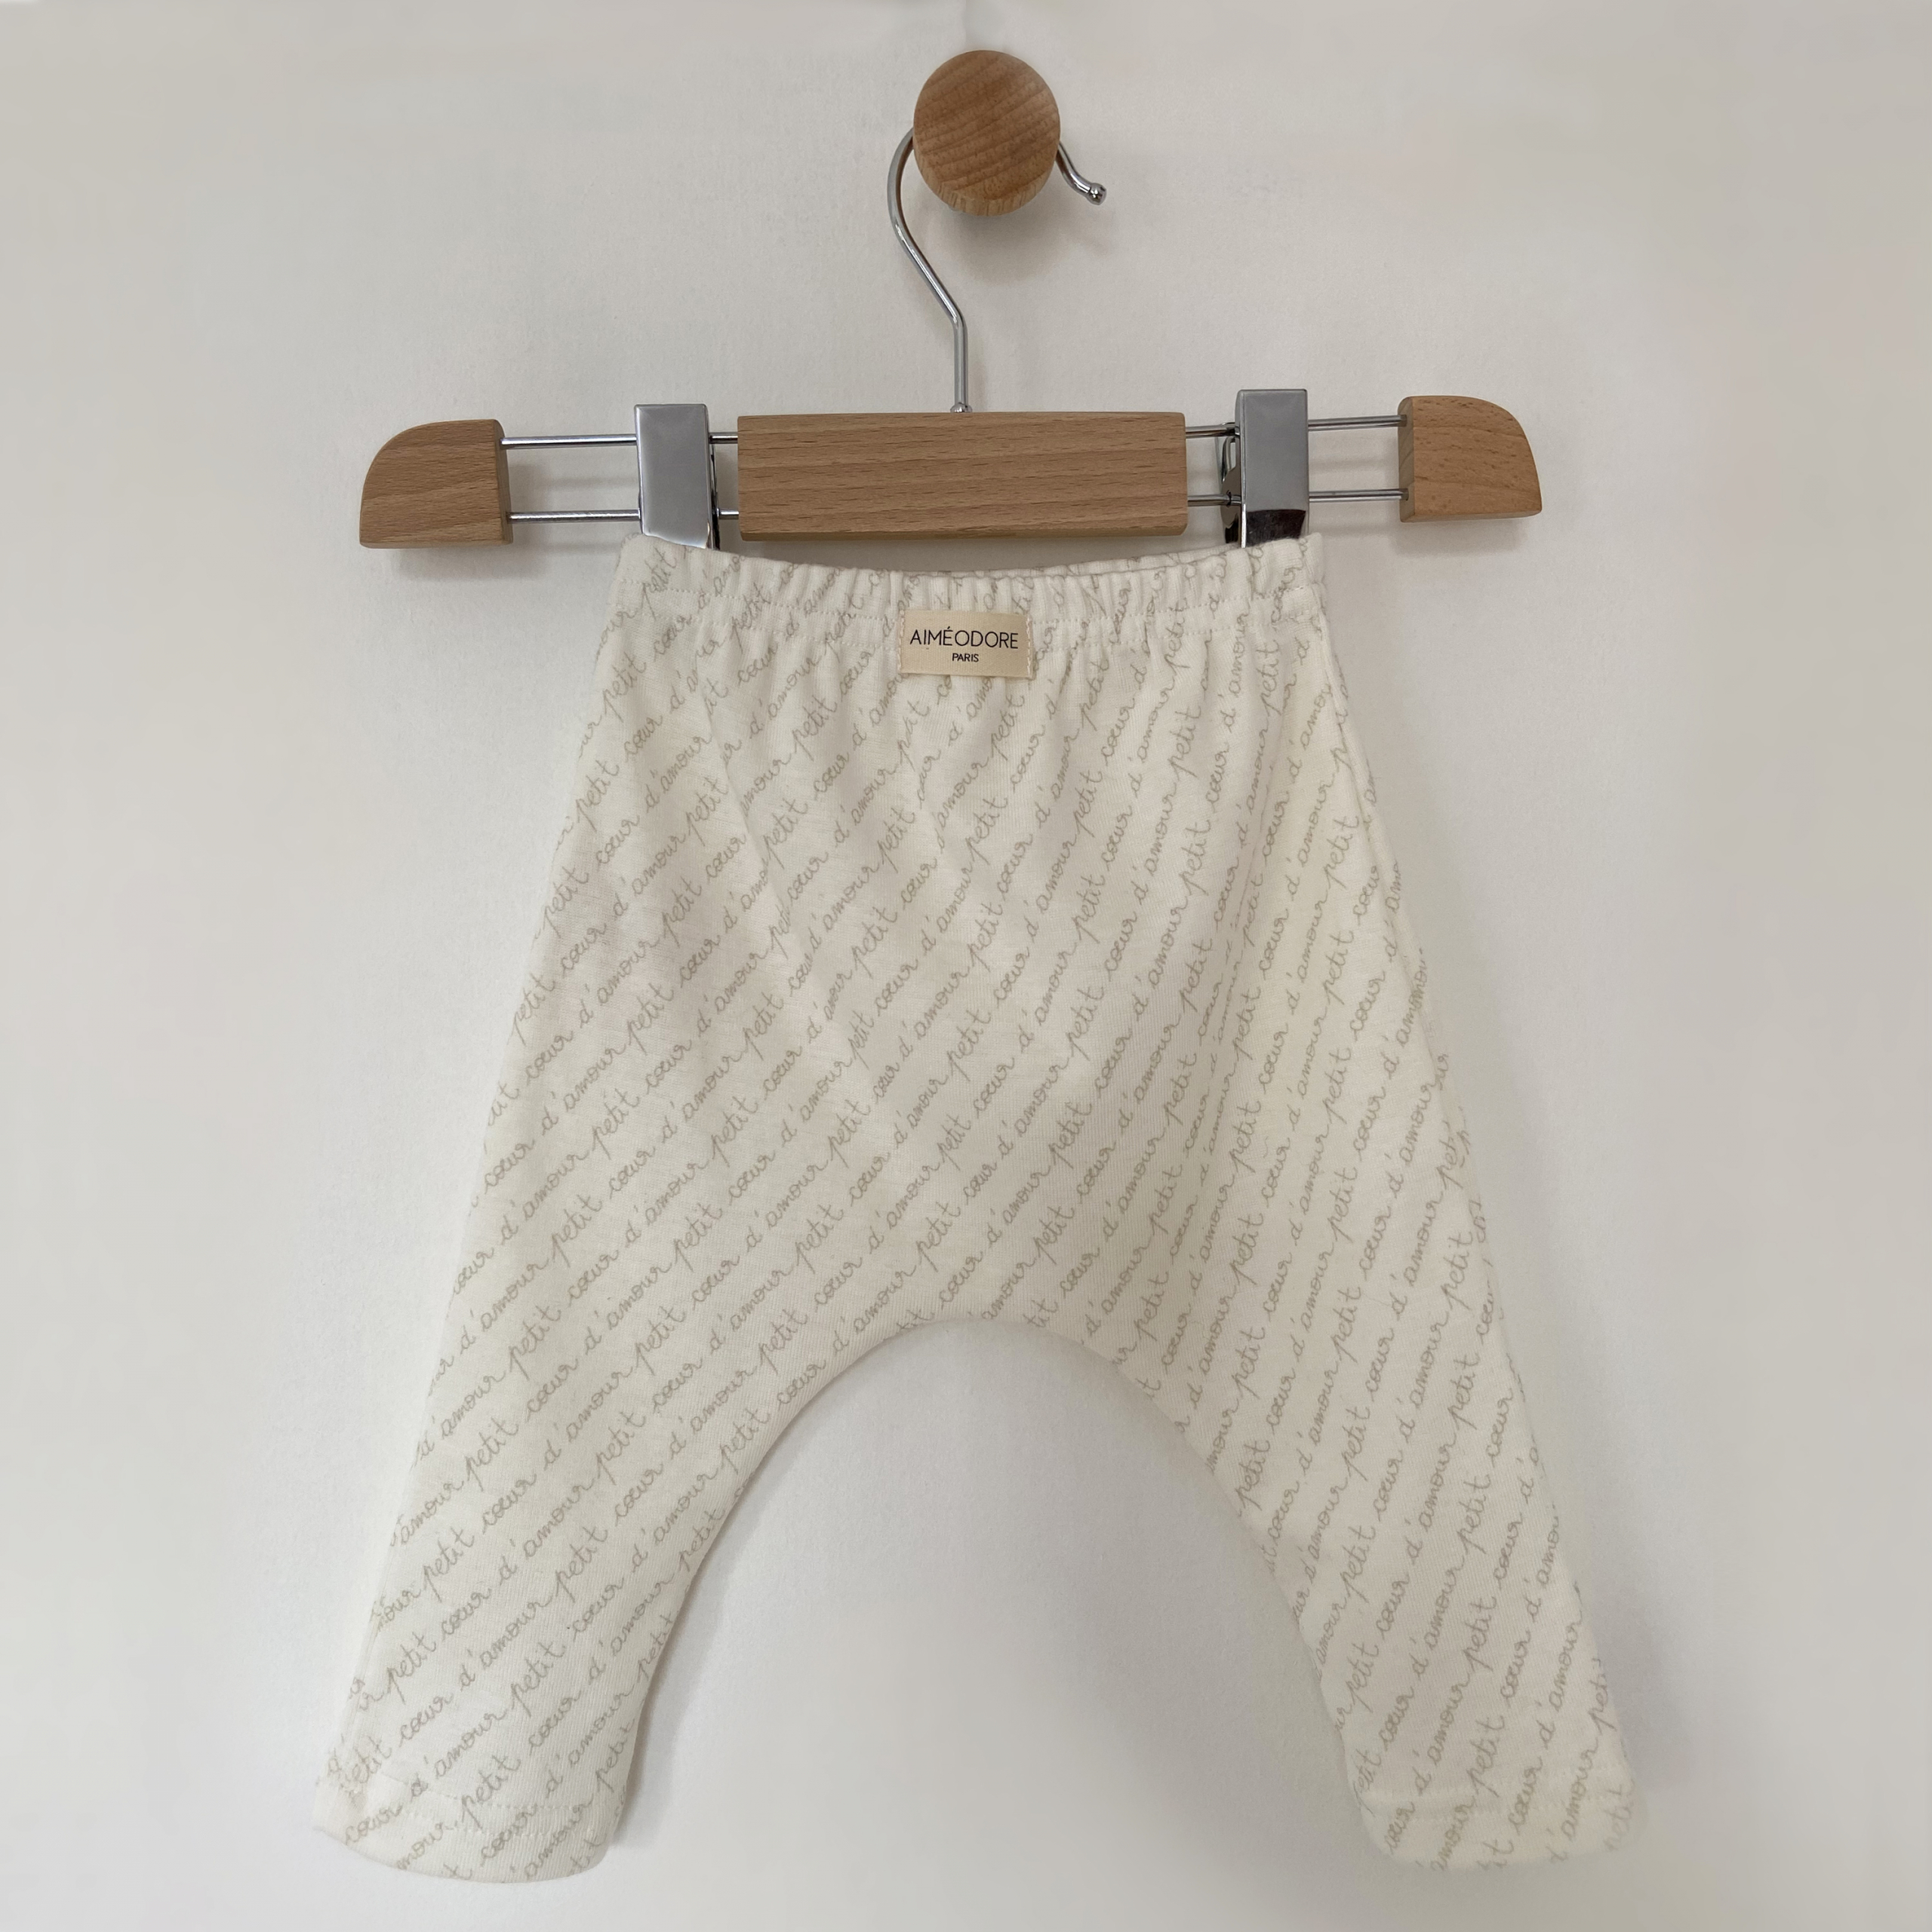 Legging sans pied Aimeodore Paris Vêtements & accessoires pour bébé, fabriqués en France, éco-responsable & local en coton bio